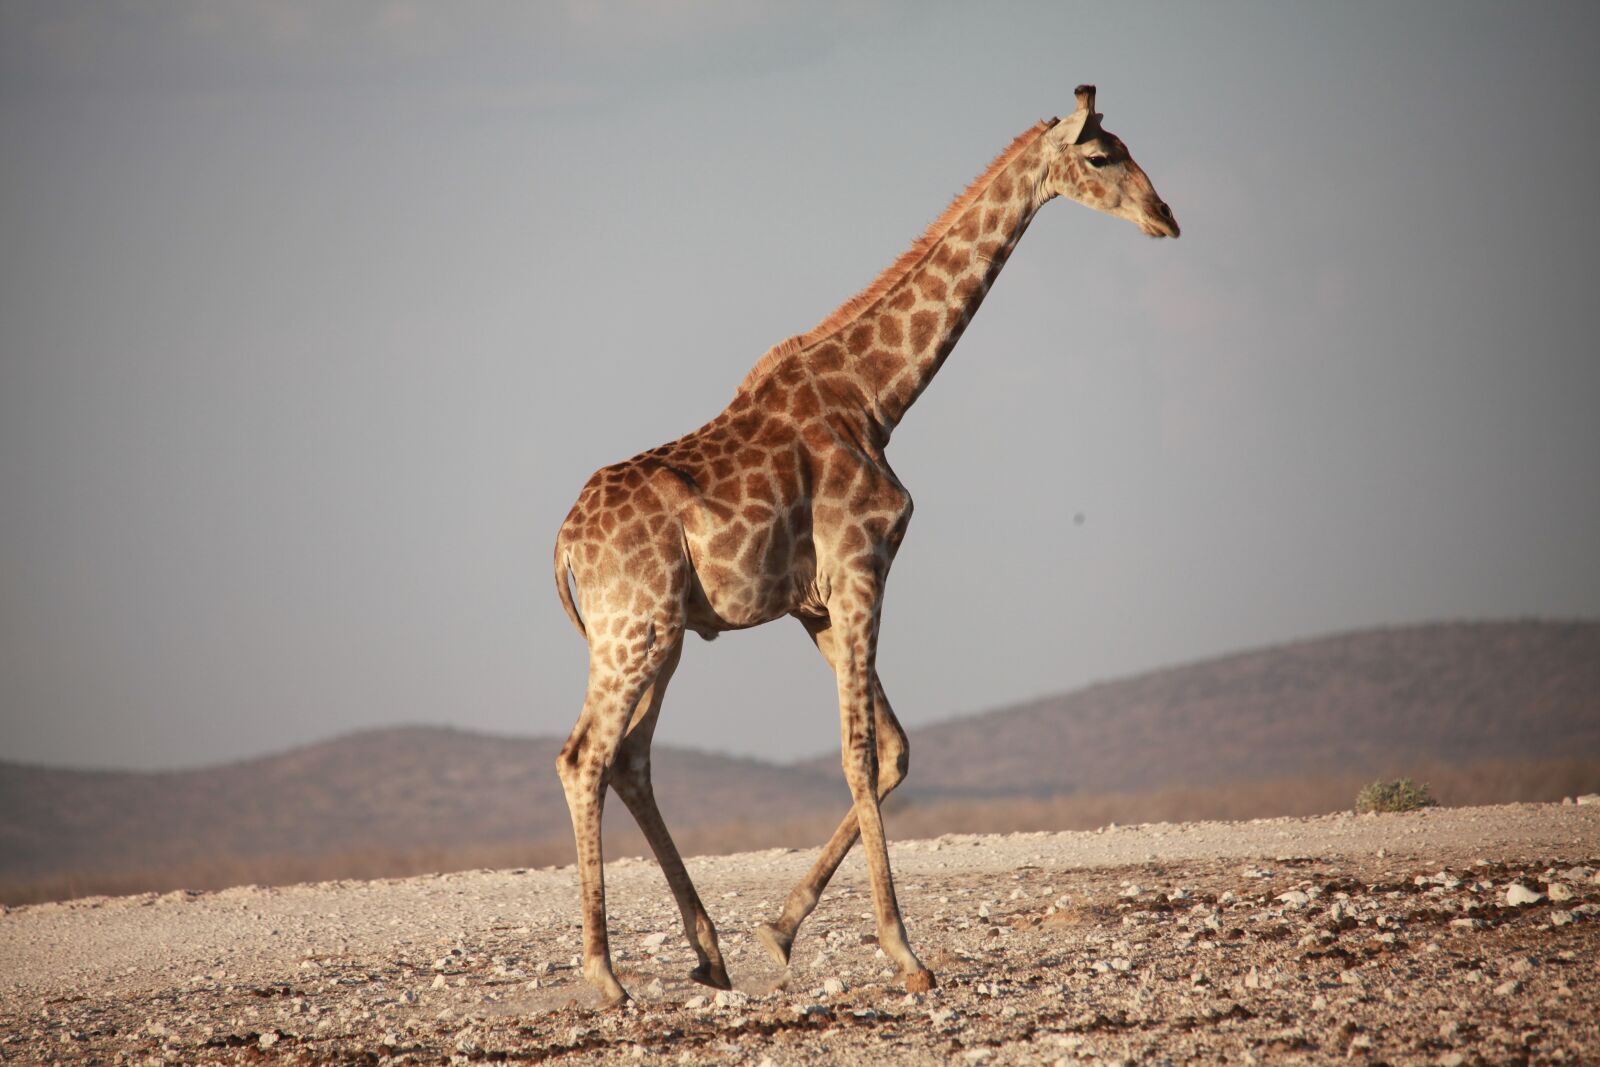 Canon EOS 5D Mark II sample photo. Giraffe, africa, safari photography